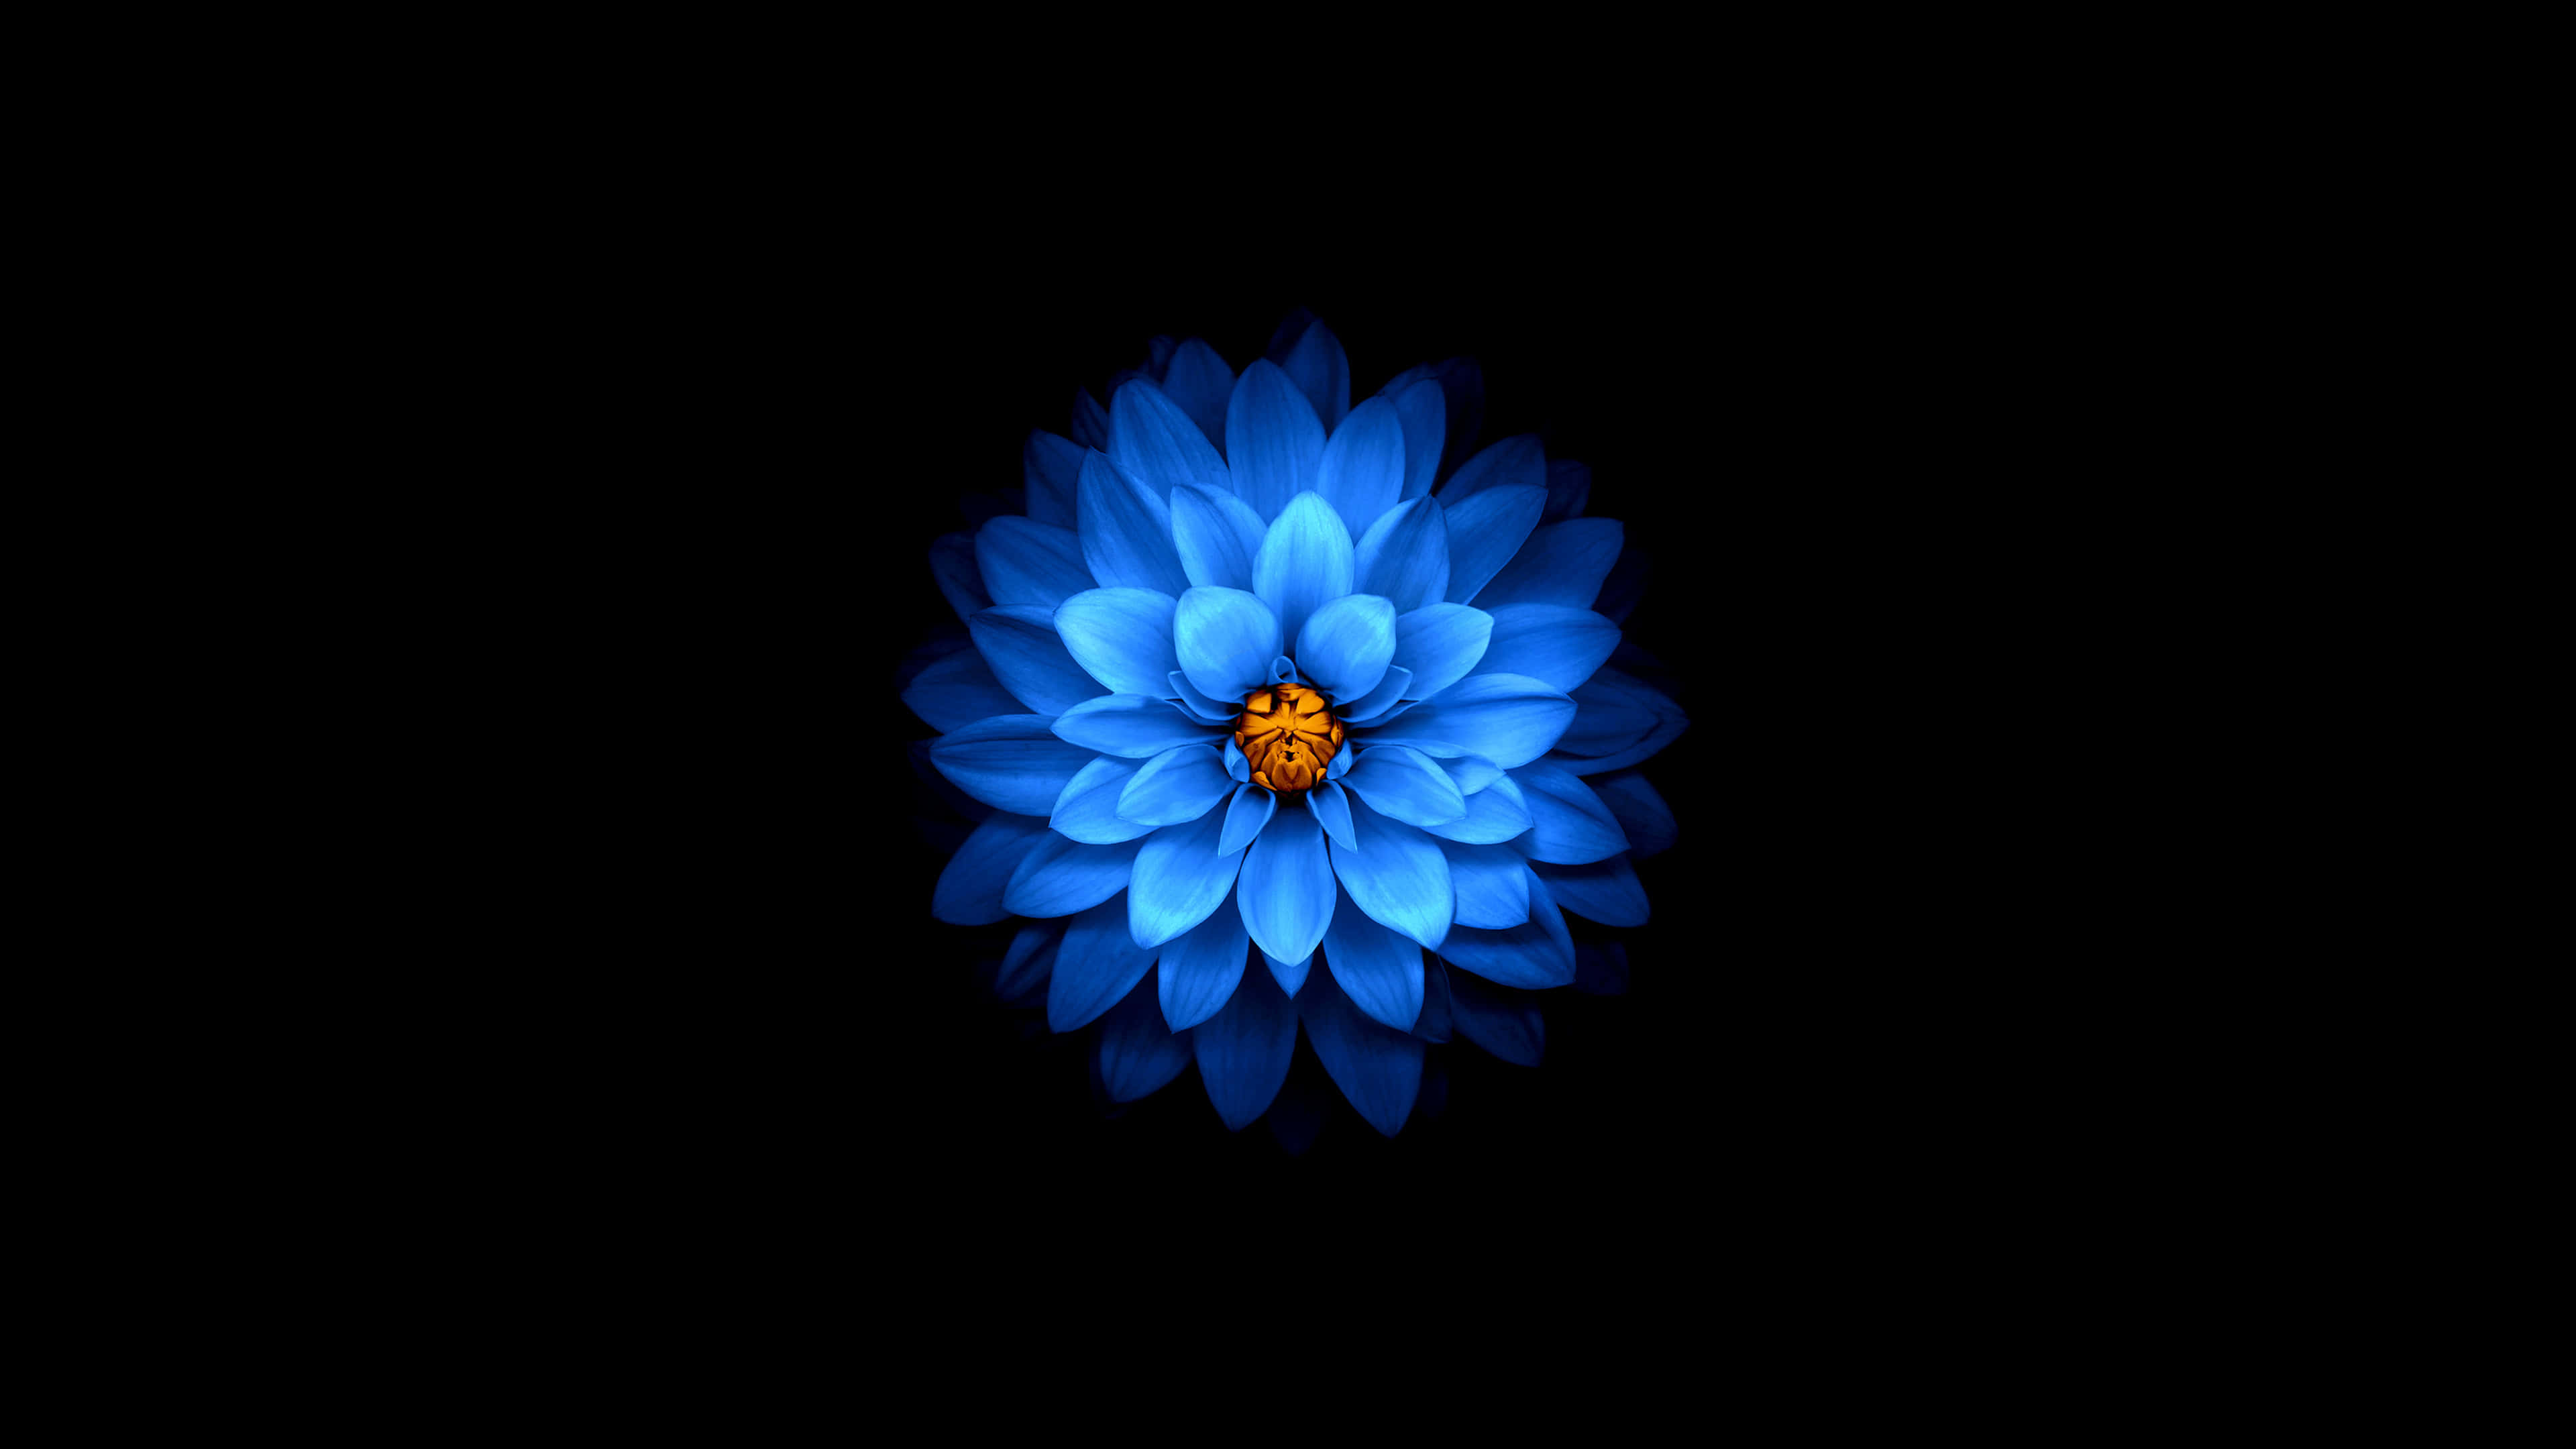 Bộ sưu tập hình ảnh hoa sen xanh đẹp nhất - Ảnh đẹp hoa